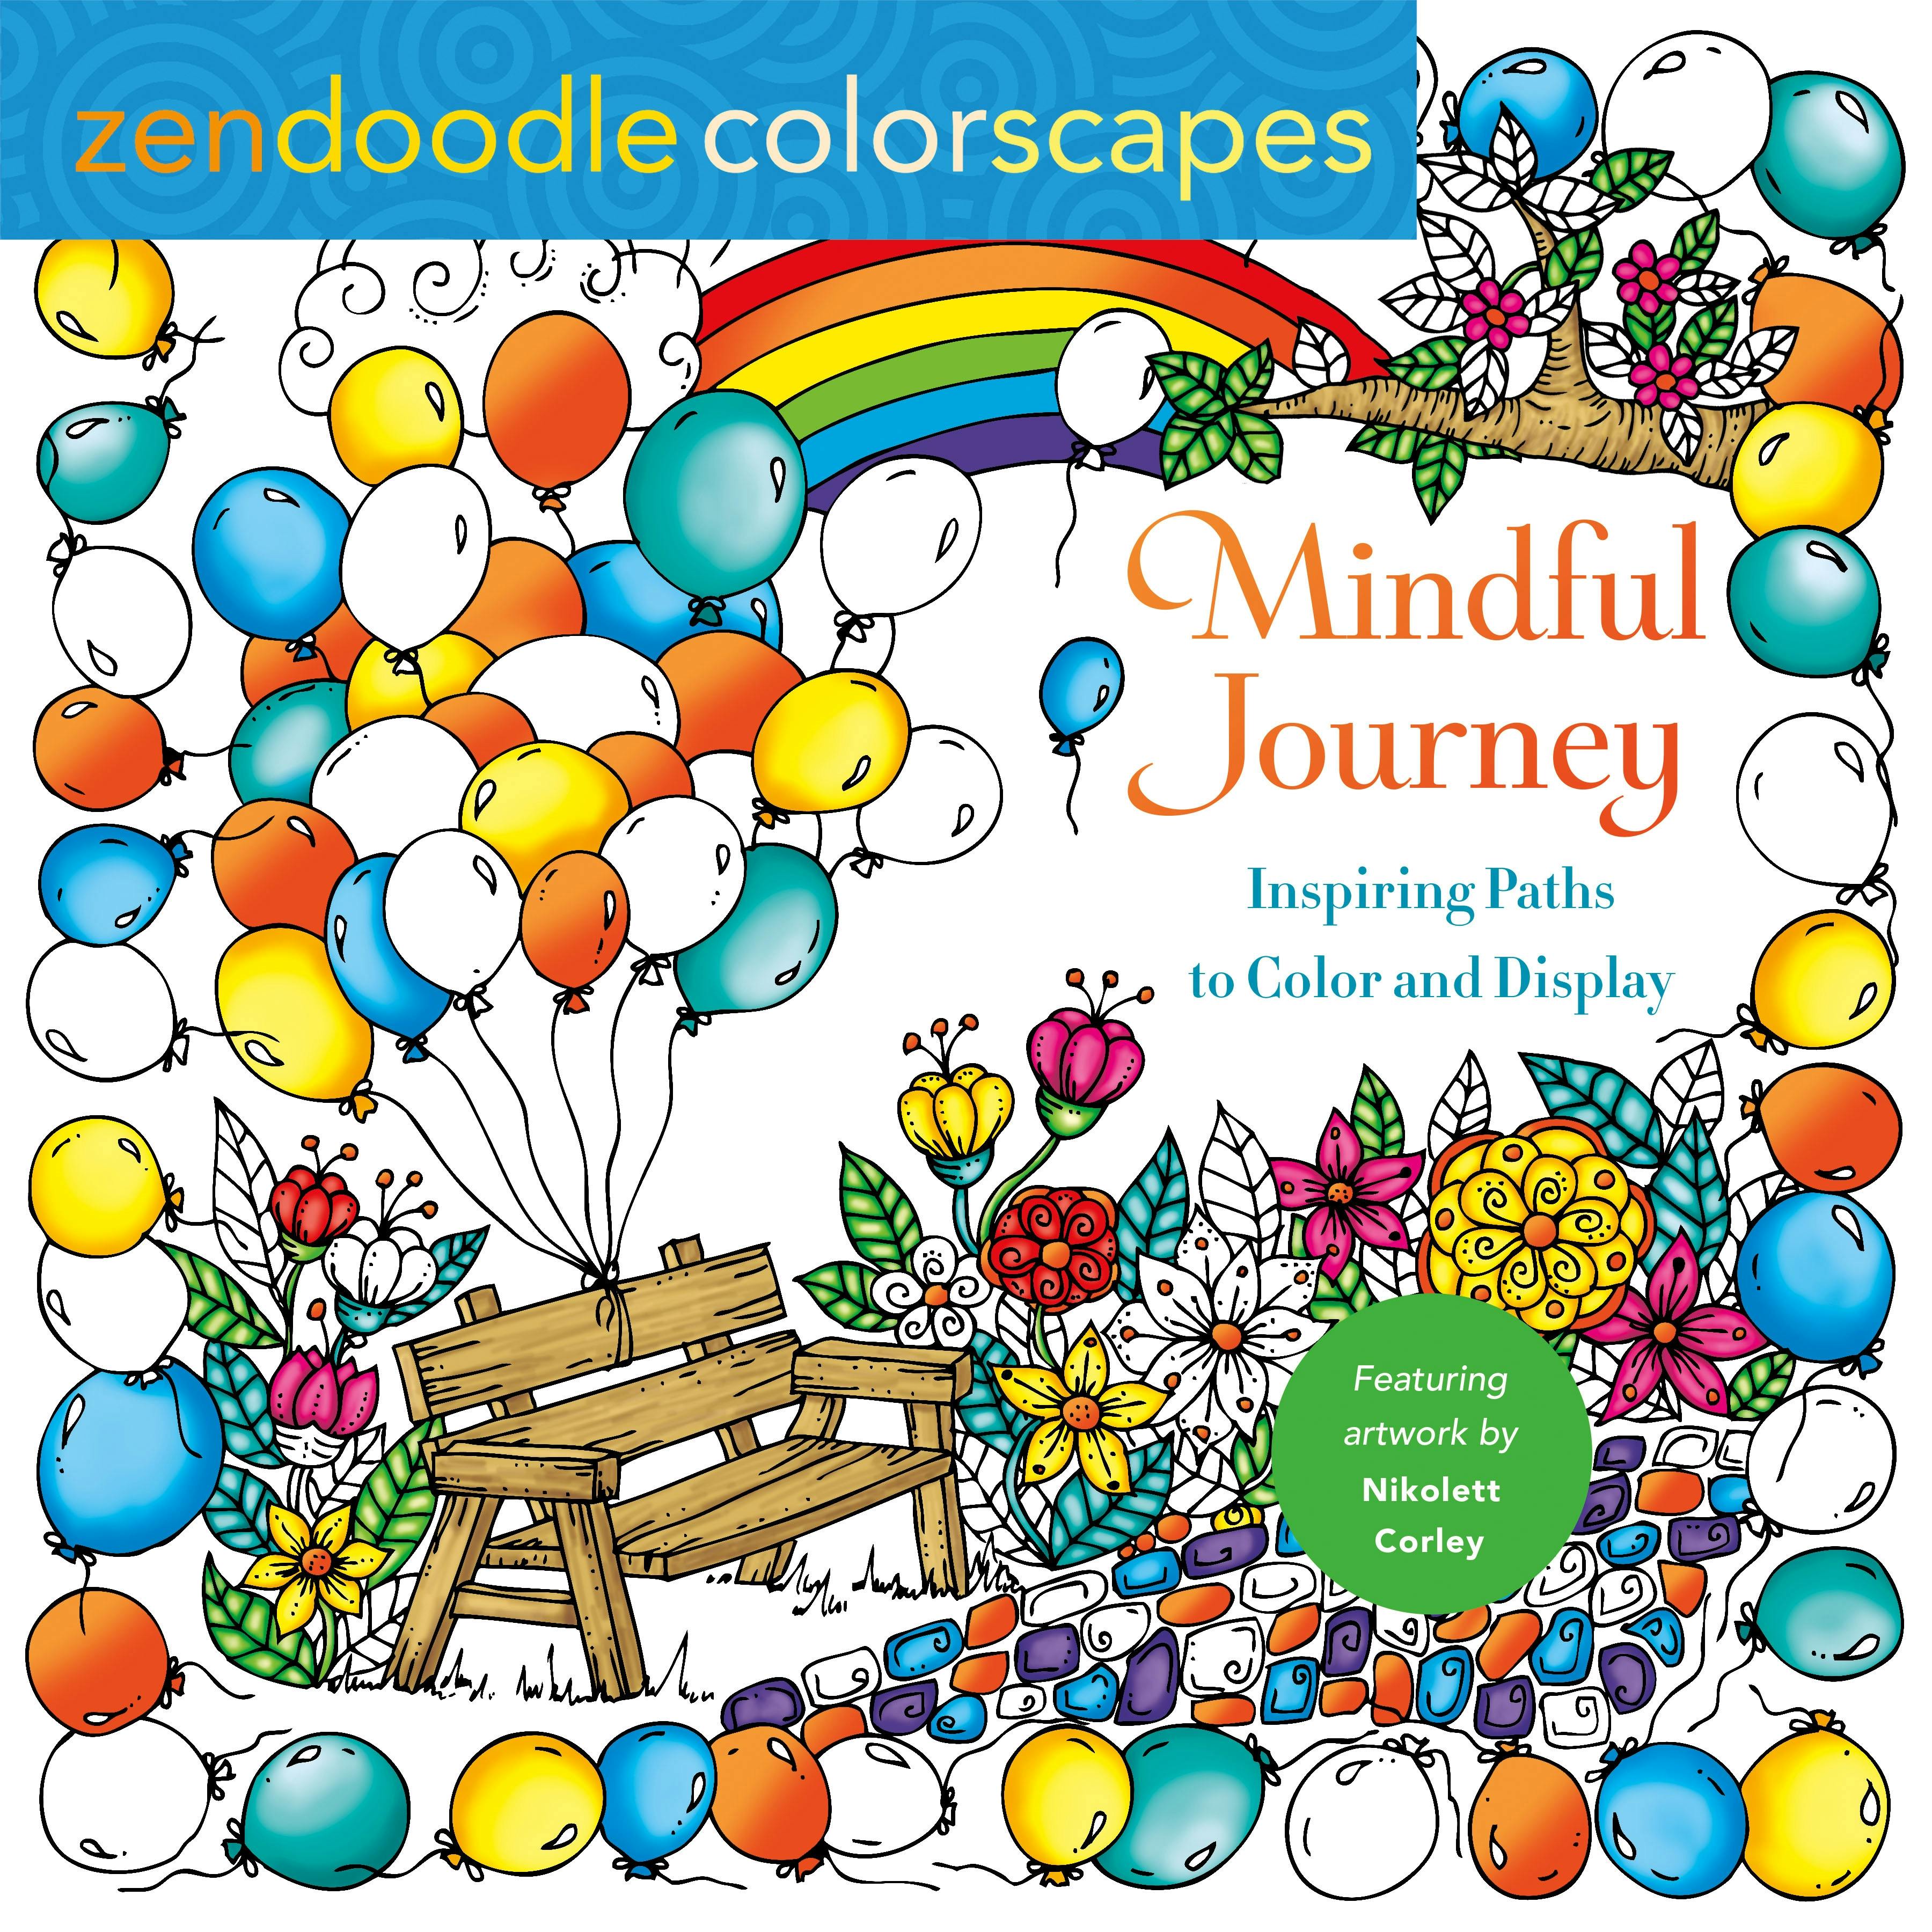 Zendoodle Colorscapes: Mindful Journey